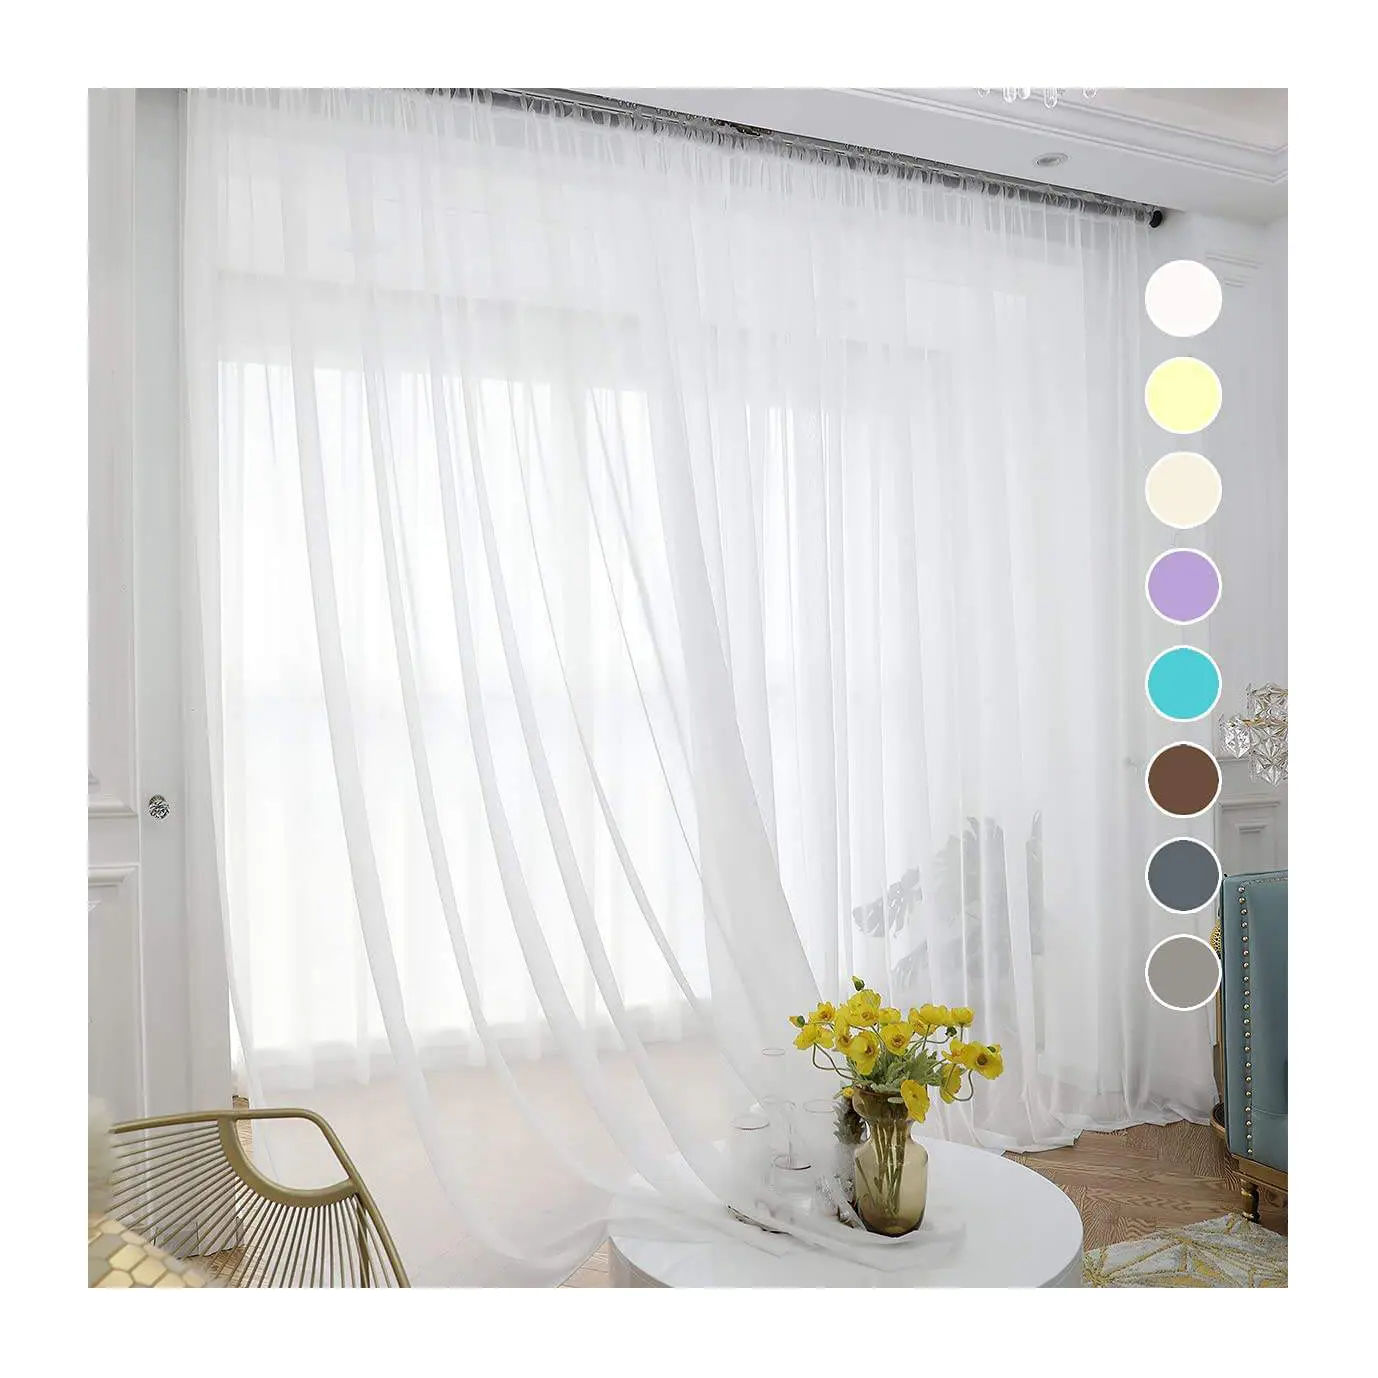 Tela transparente bordada para cortina de gasa, 280 y 300CM, 45GSM, 100% poliéster, precio barato, gran oferta